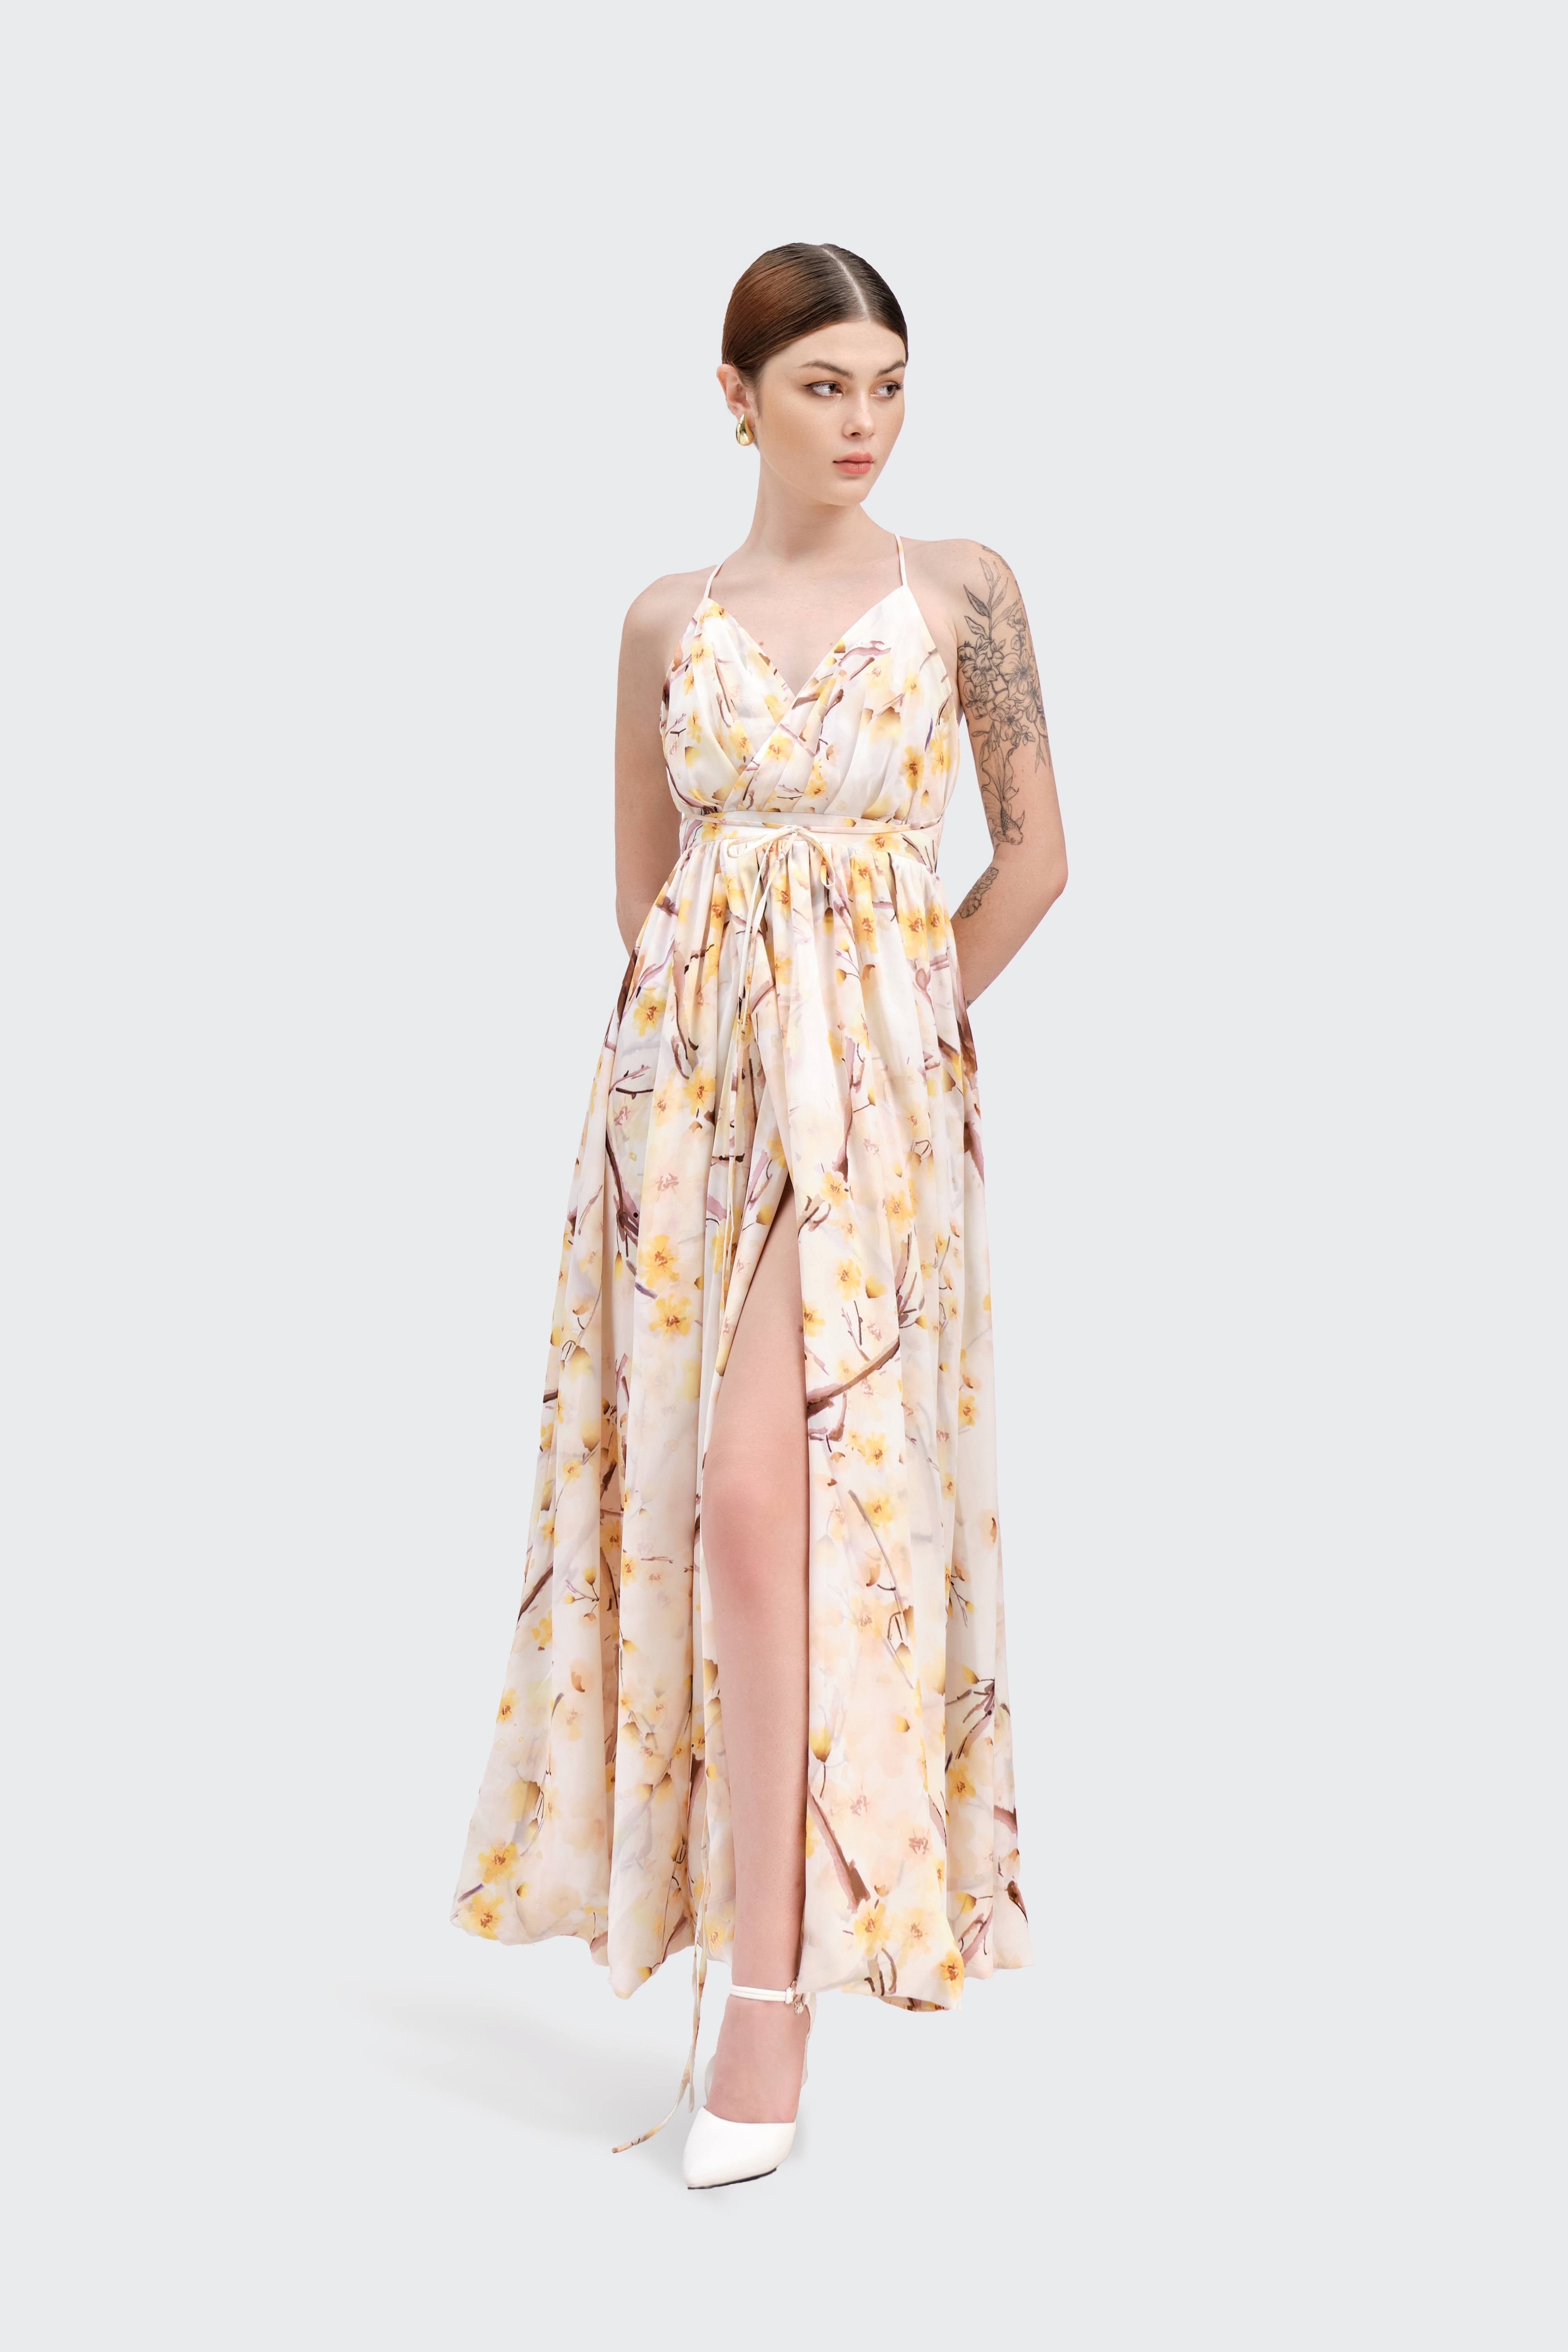 Ochna Blossom Maxi Dress